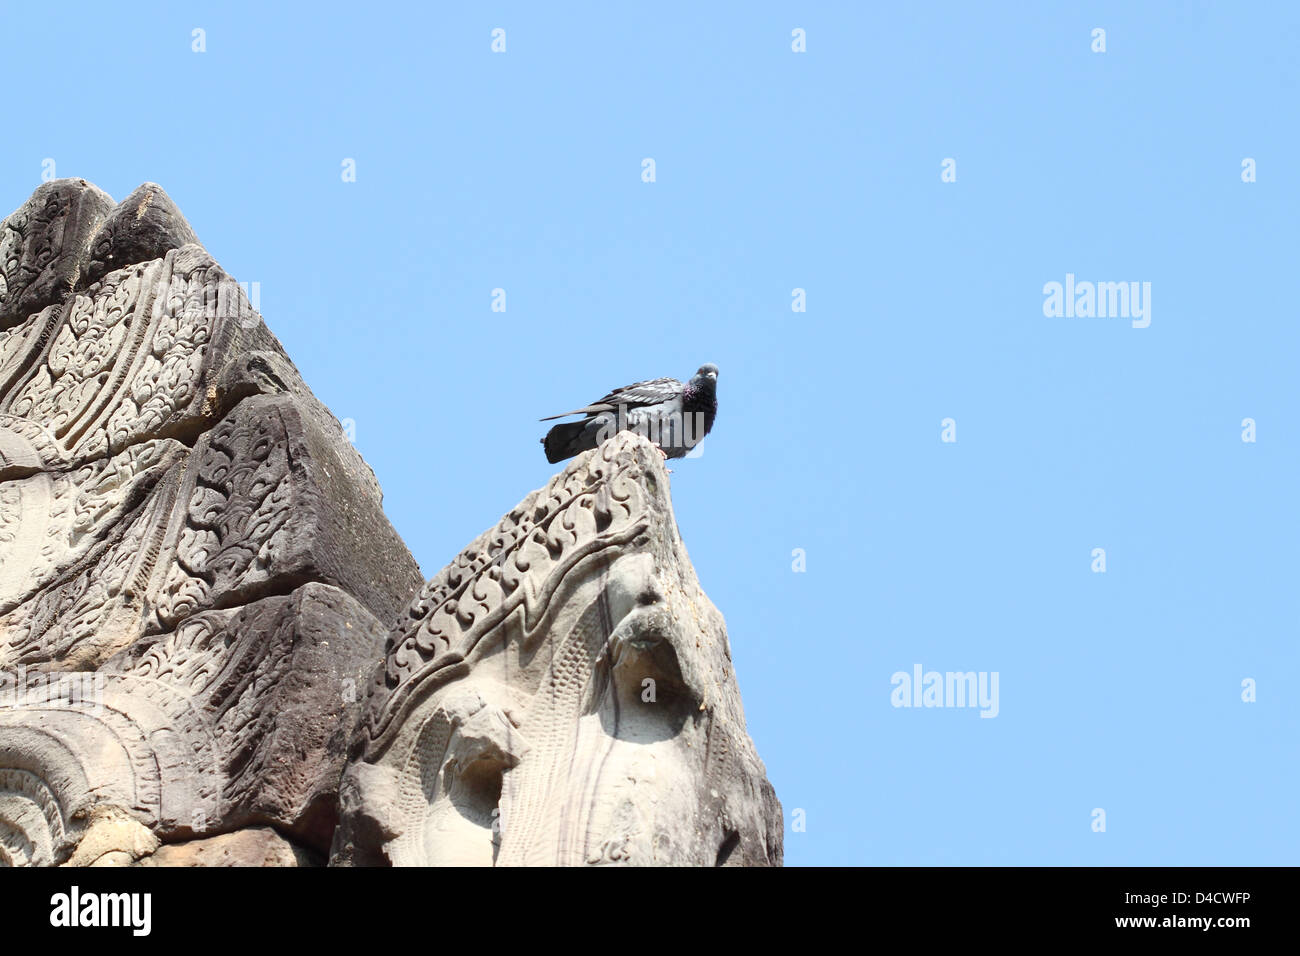 Le pigeon s'asseoir sur la pierre ancienne avec ciel bleu Banque D'Images